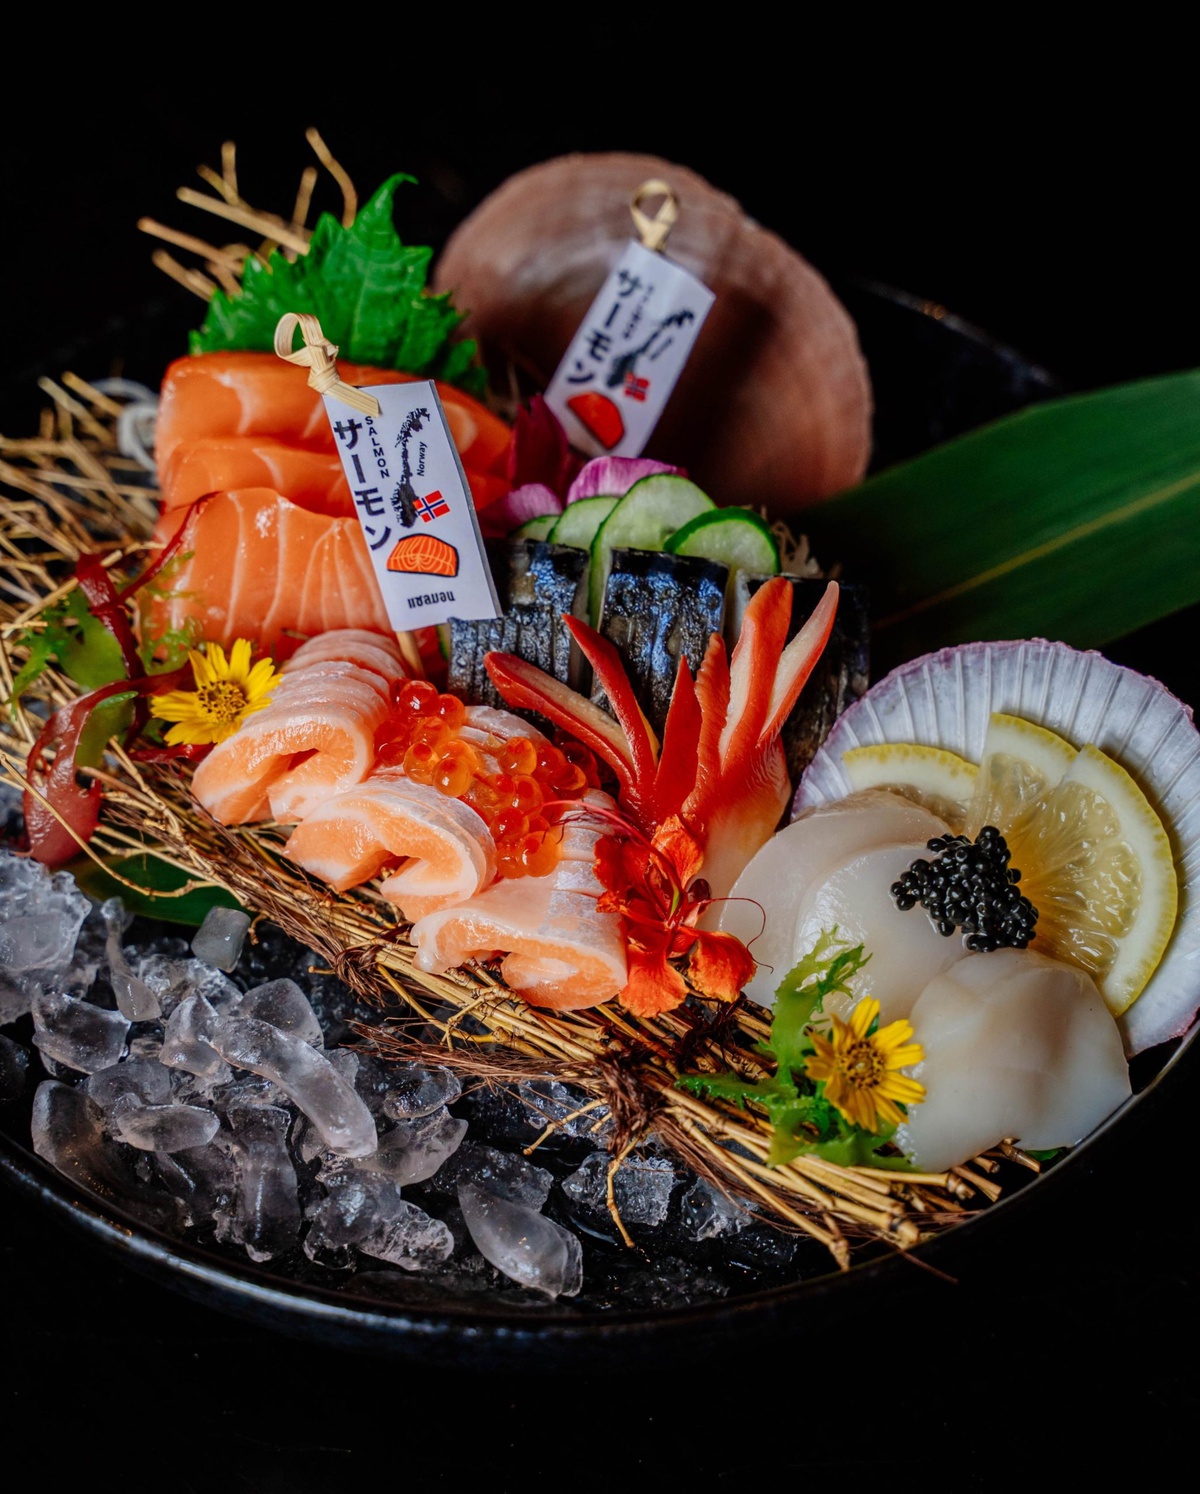 สัมผัสสุนทรียรสชาติอาหารญี่ปุ่น ขุมทรัพย์ความอร่อยแห่งท้องทะเลลึก ห้องอาหารฮากิ โรงแรมเซ็นทาราแกรนด์มิราจบีชรีสอร์ท พัทยา